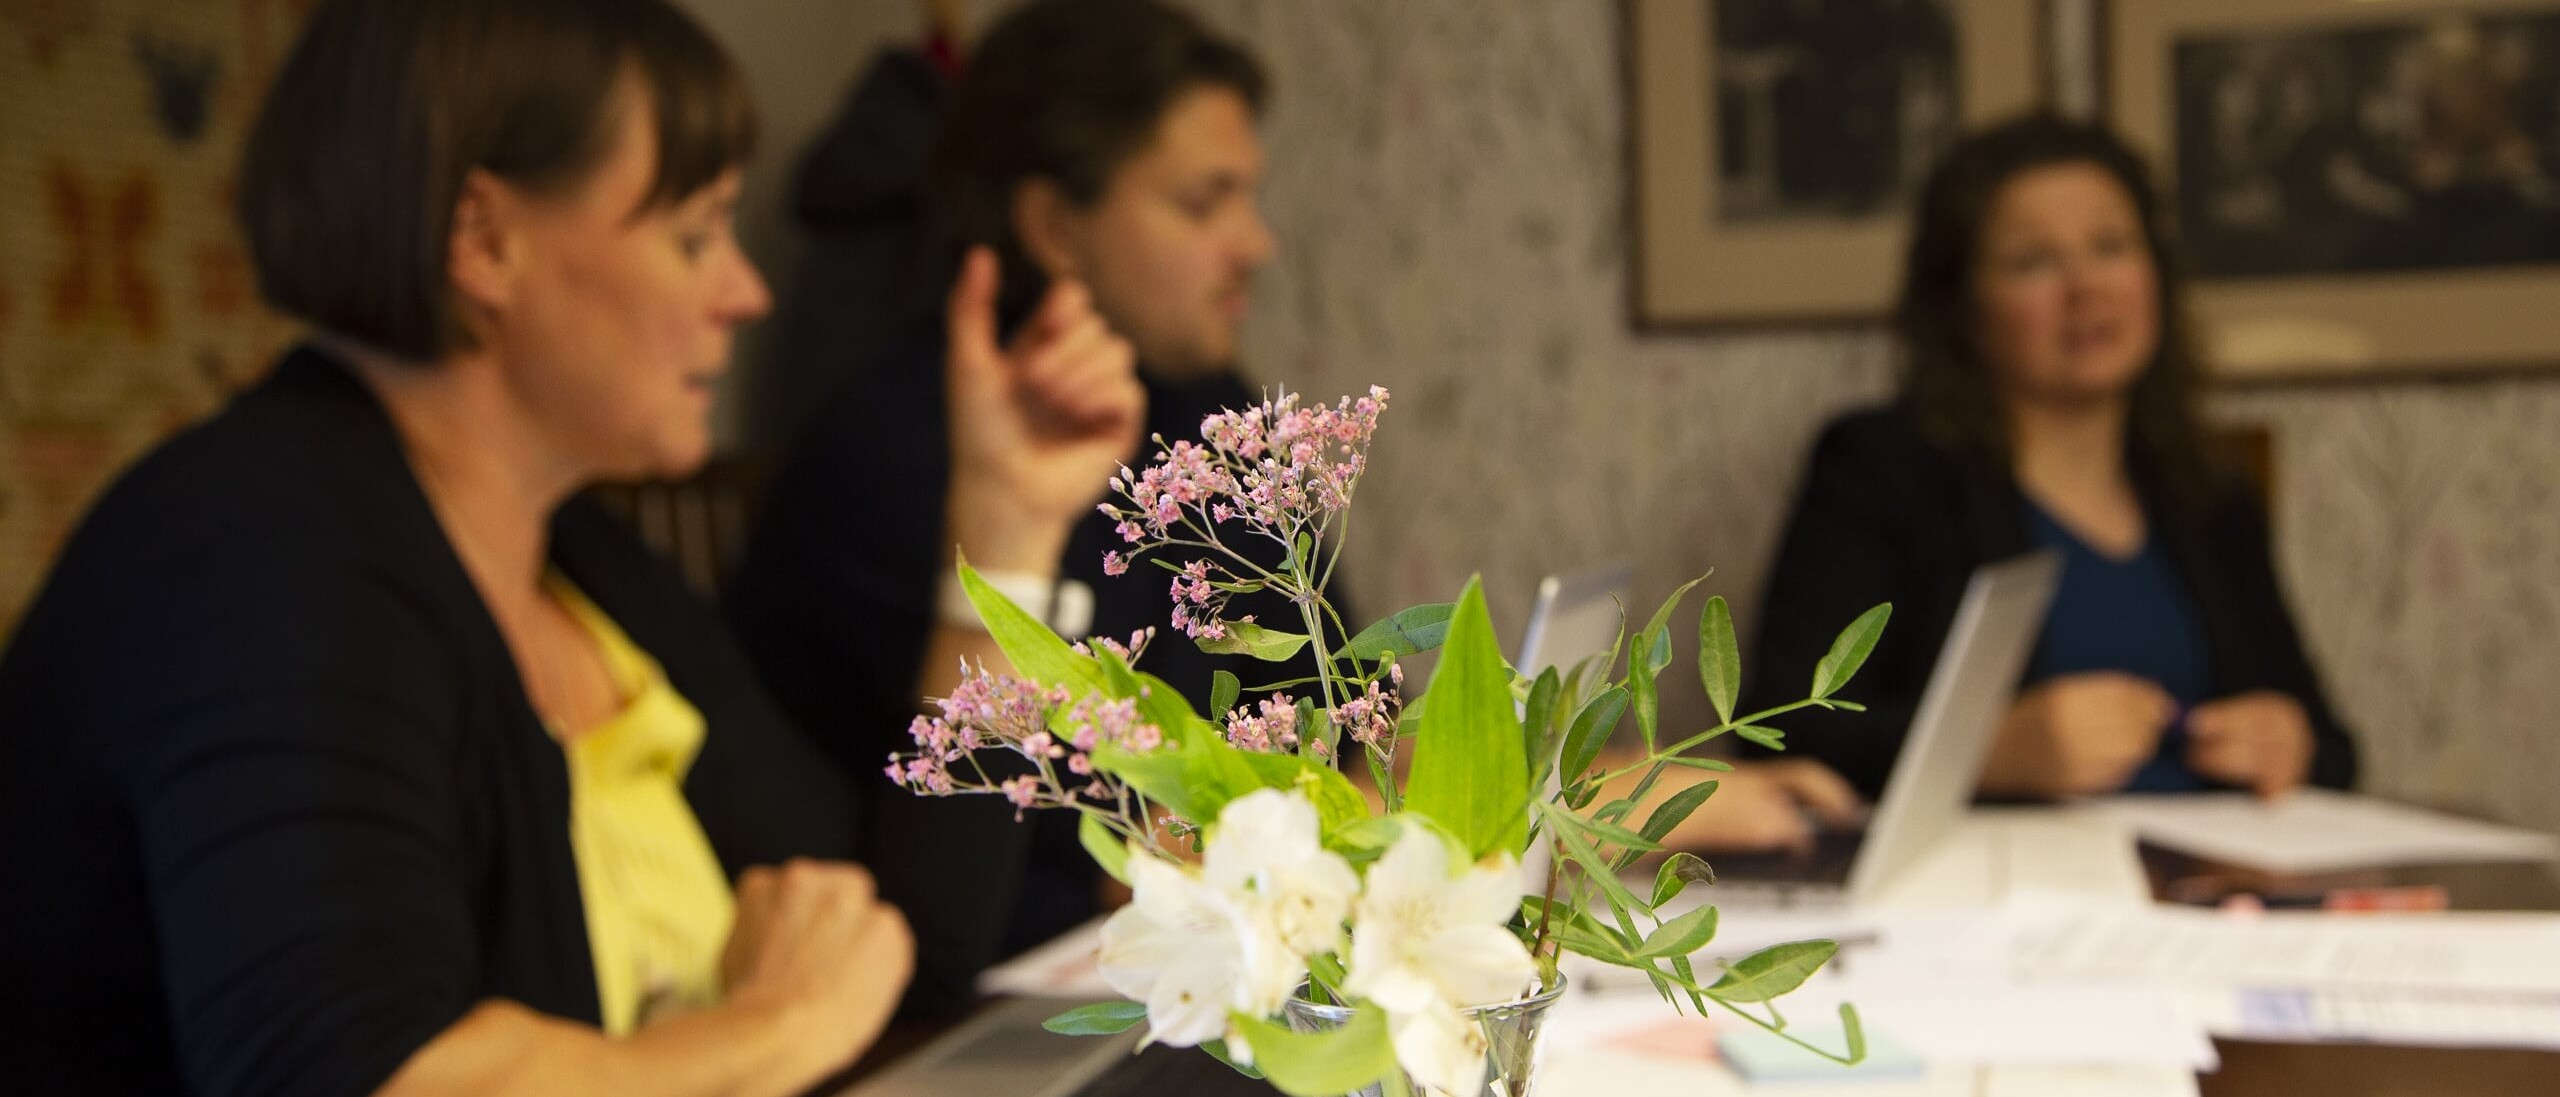 Kolme ihmistä keskustelemassa pöydän ympärillä, etualalla kukkamaljakko.